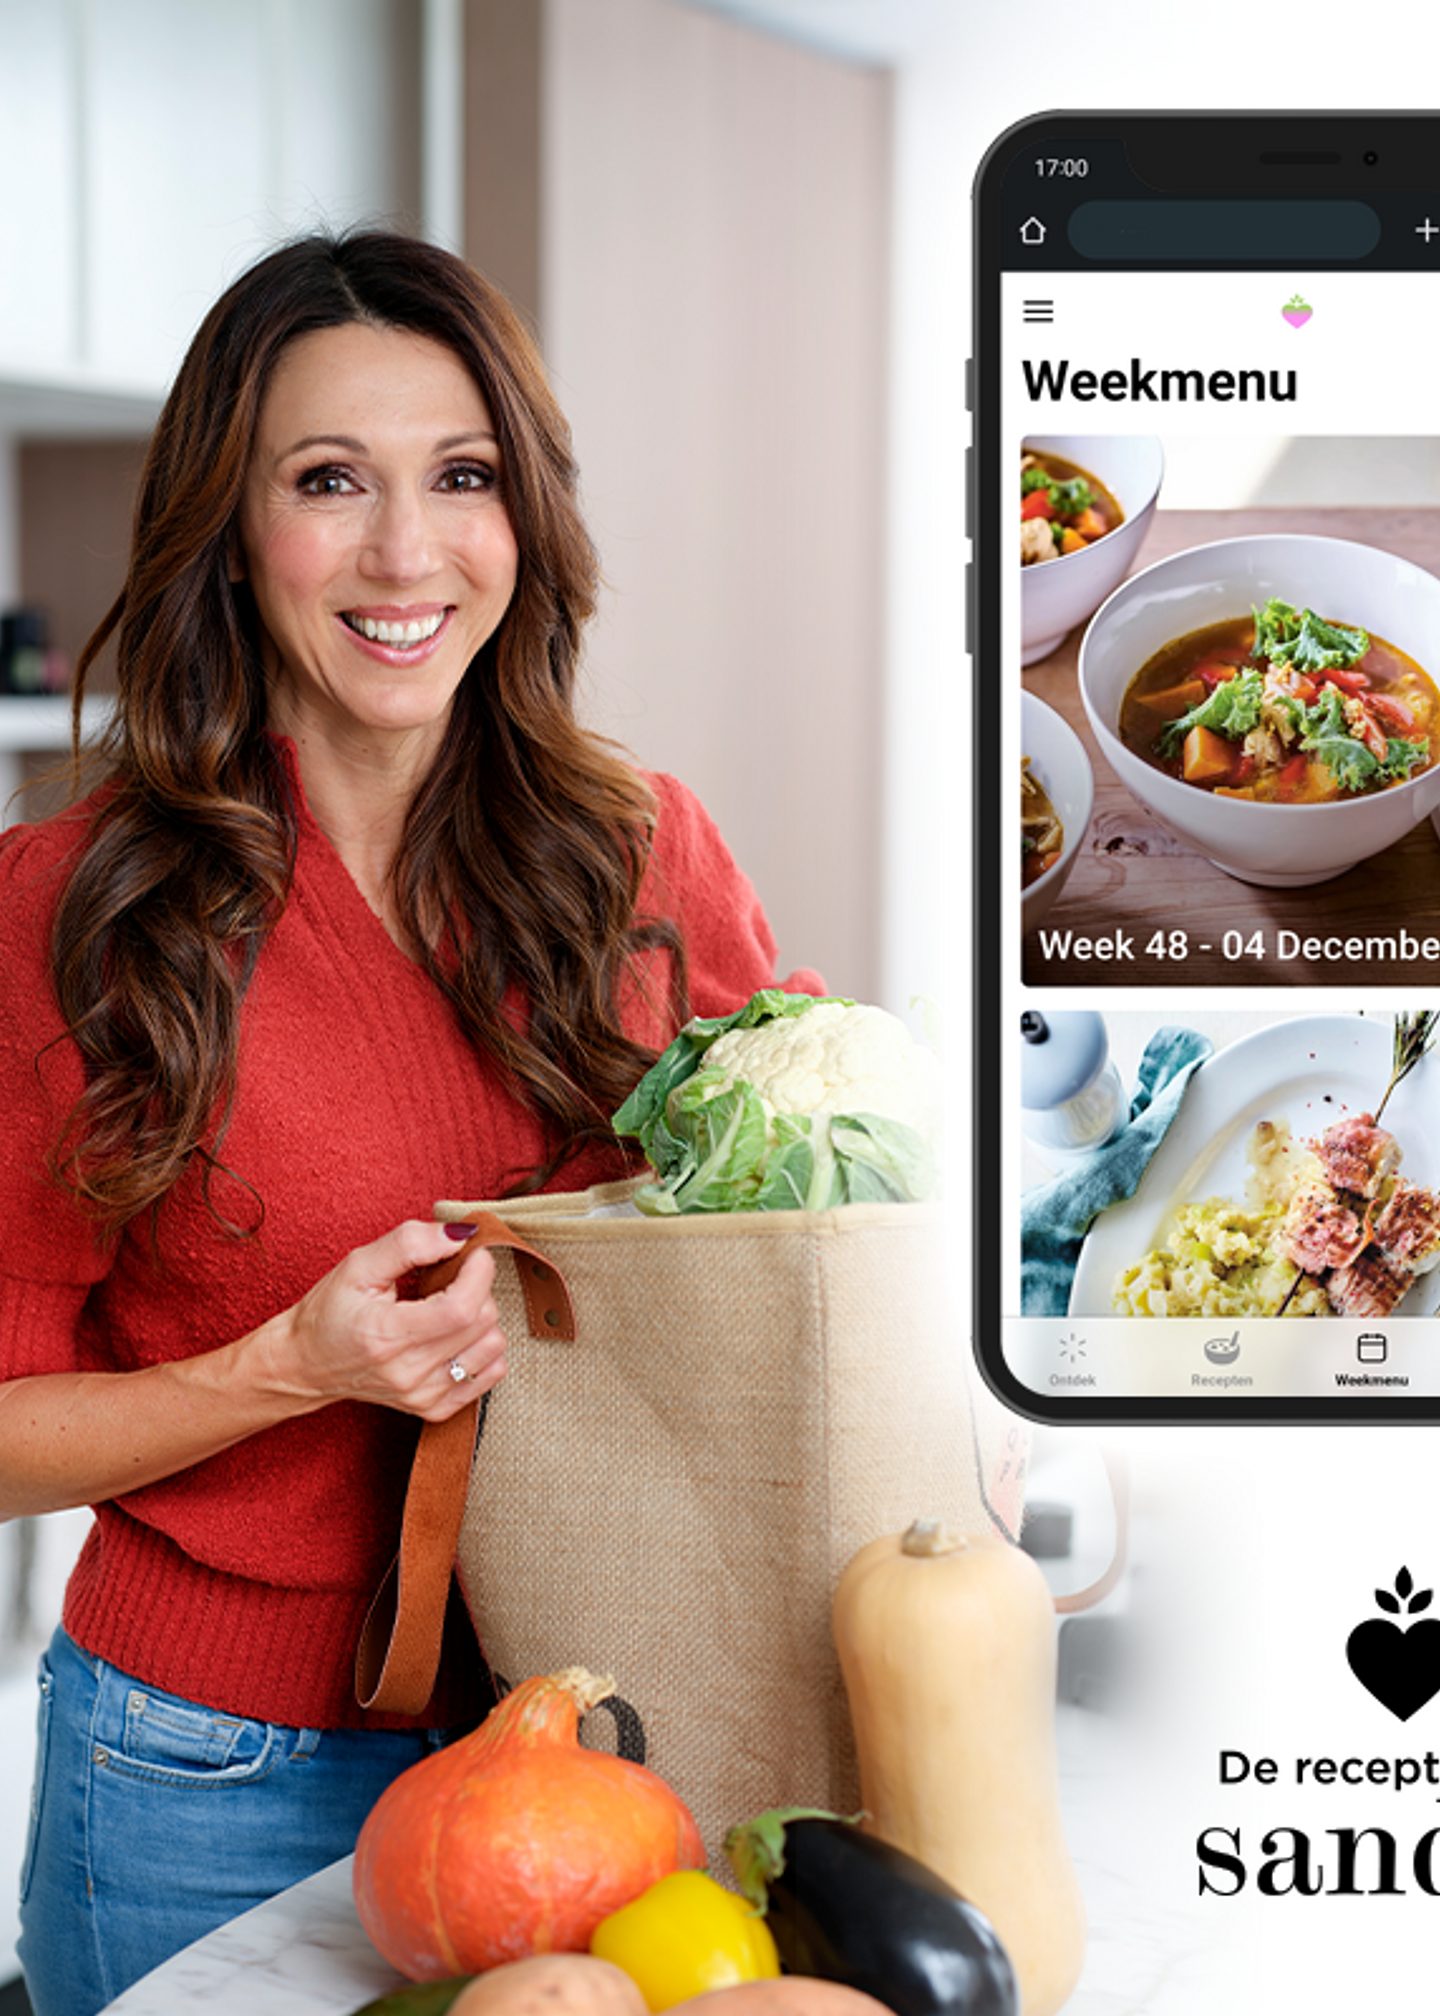 De recepten van Sandra: de nieuwe culinaire app